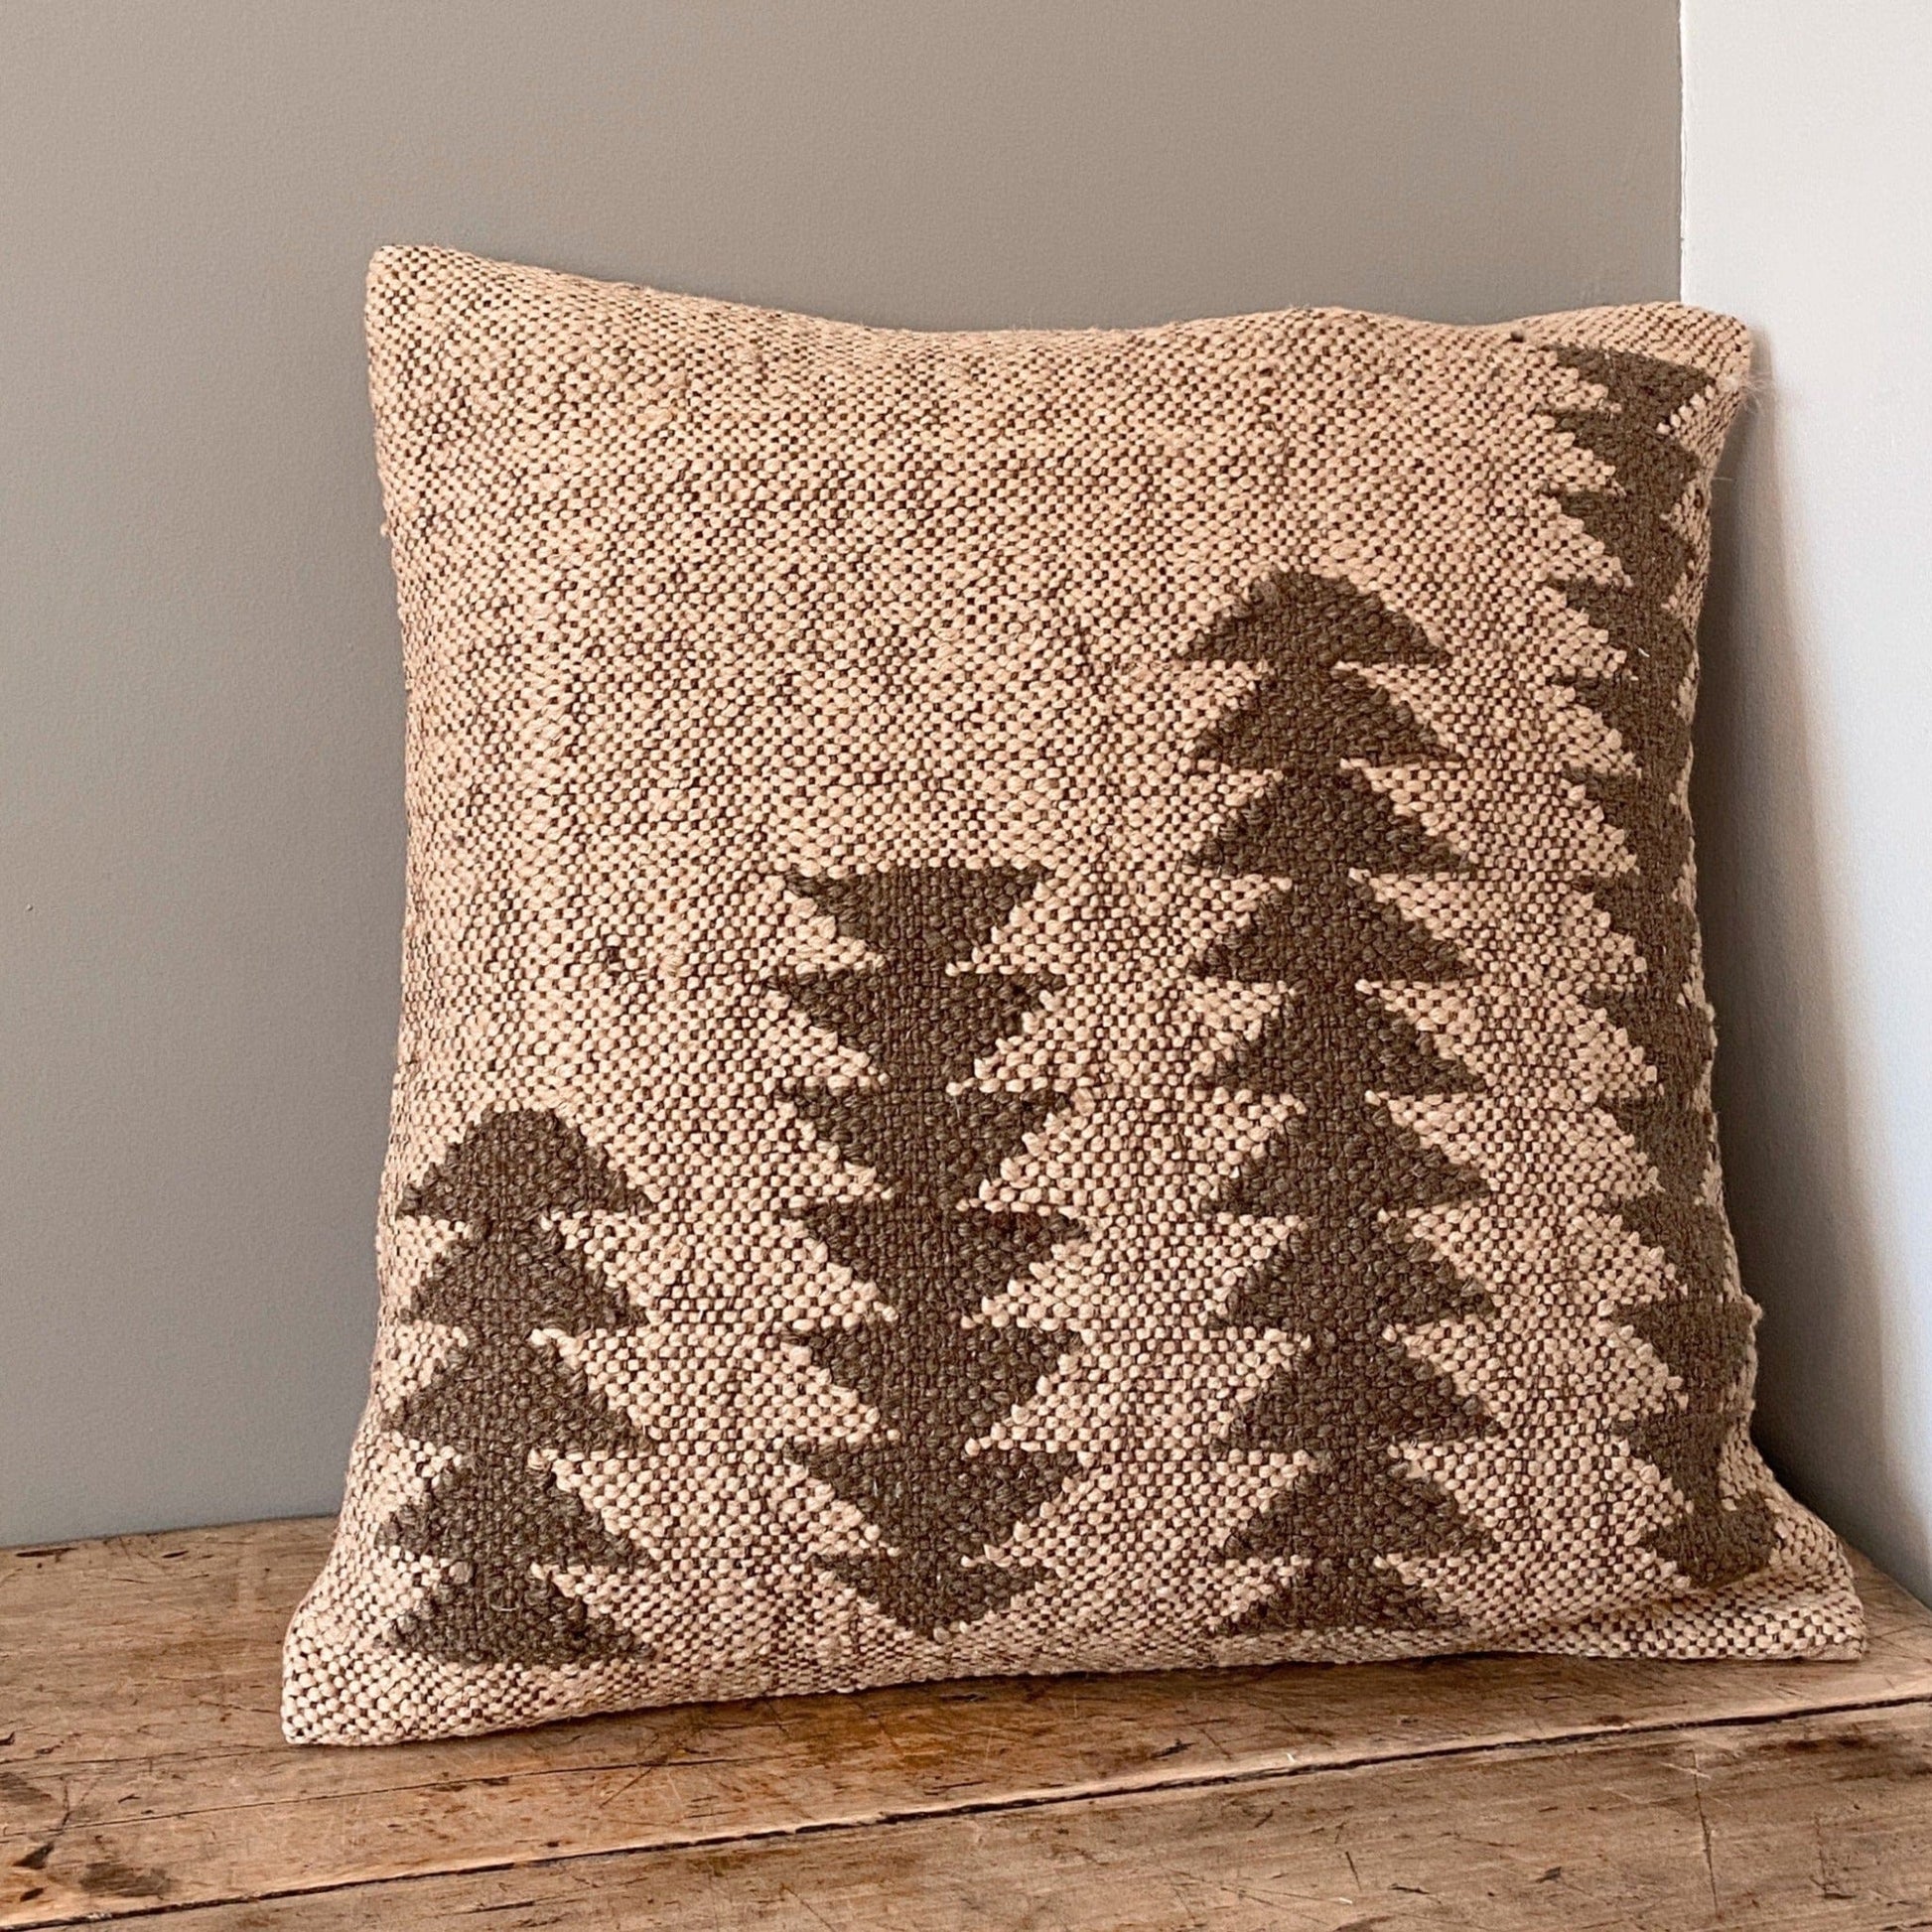 Vimla Cushions Cushion - Jute Kilim - 18x18 - Taupe Arrowheads 18432